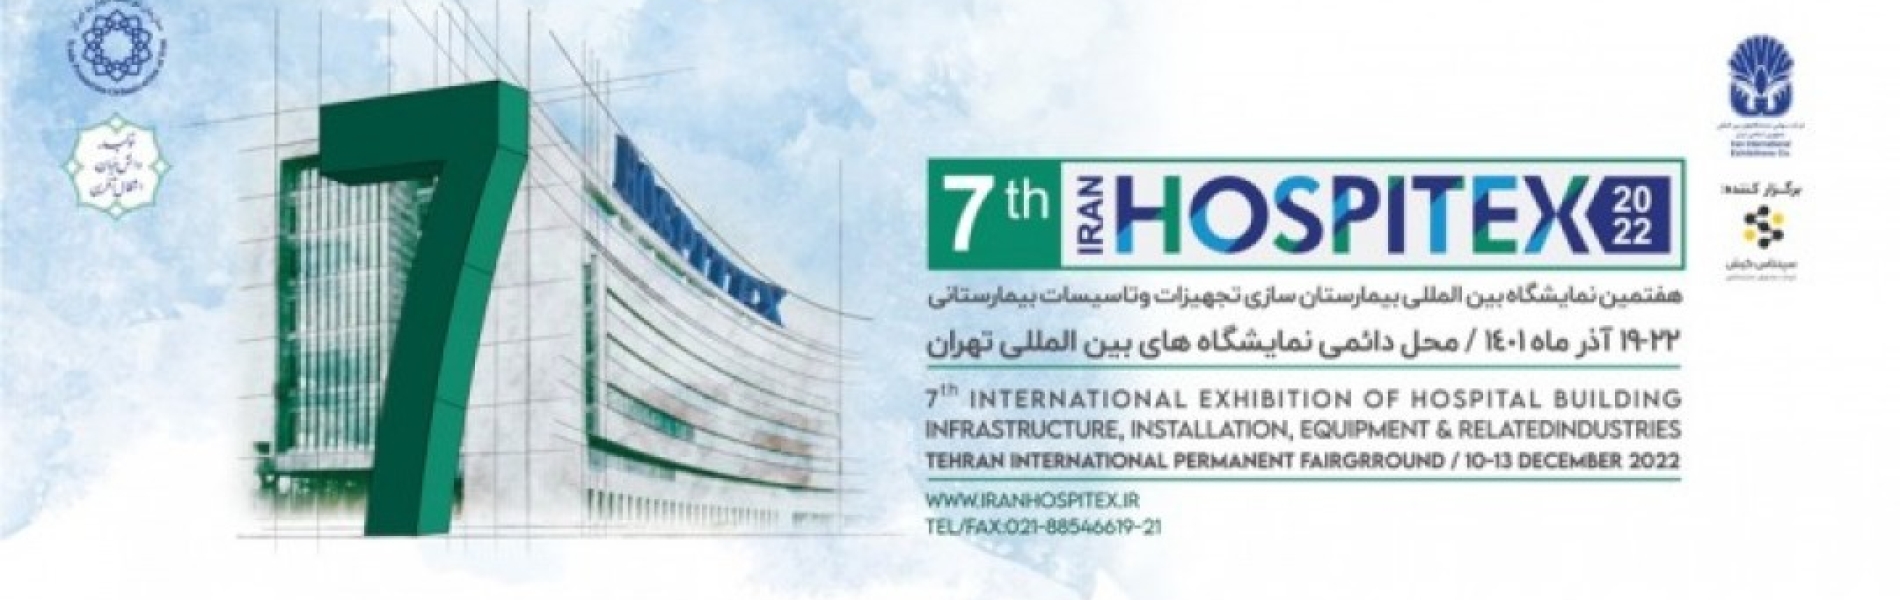 نمایشگاه بین المللی بیمارستان سازی تجهیزات و تأسیسات بیمارستانی